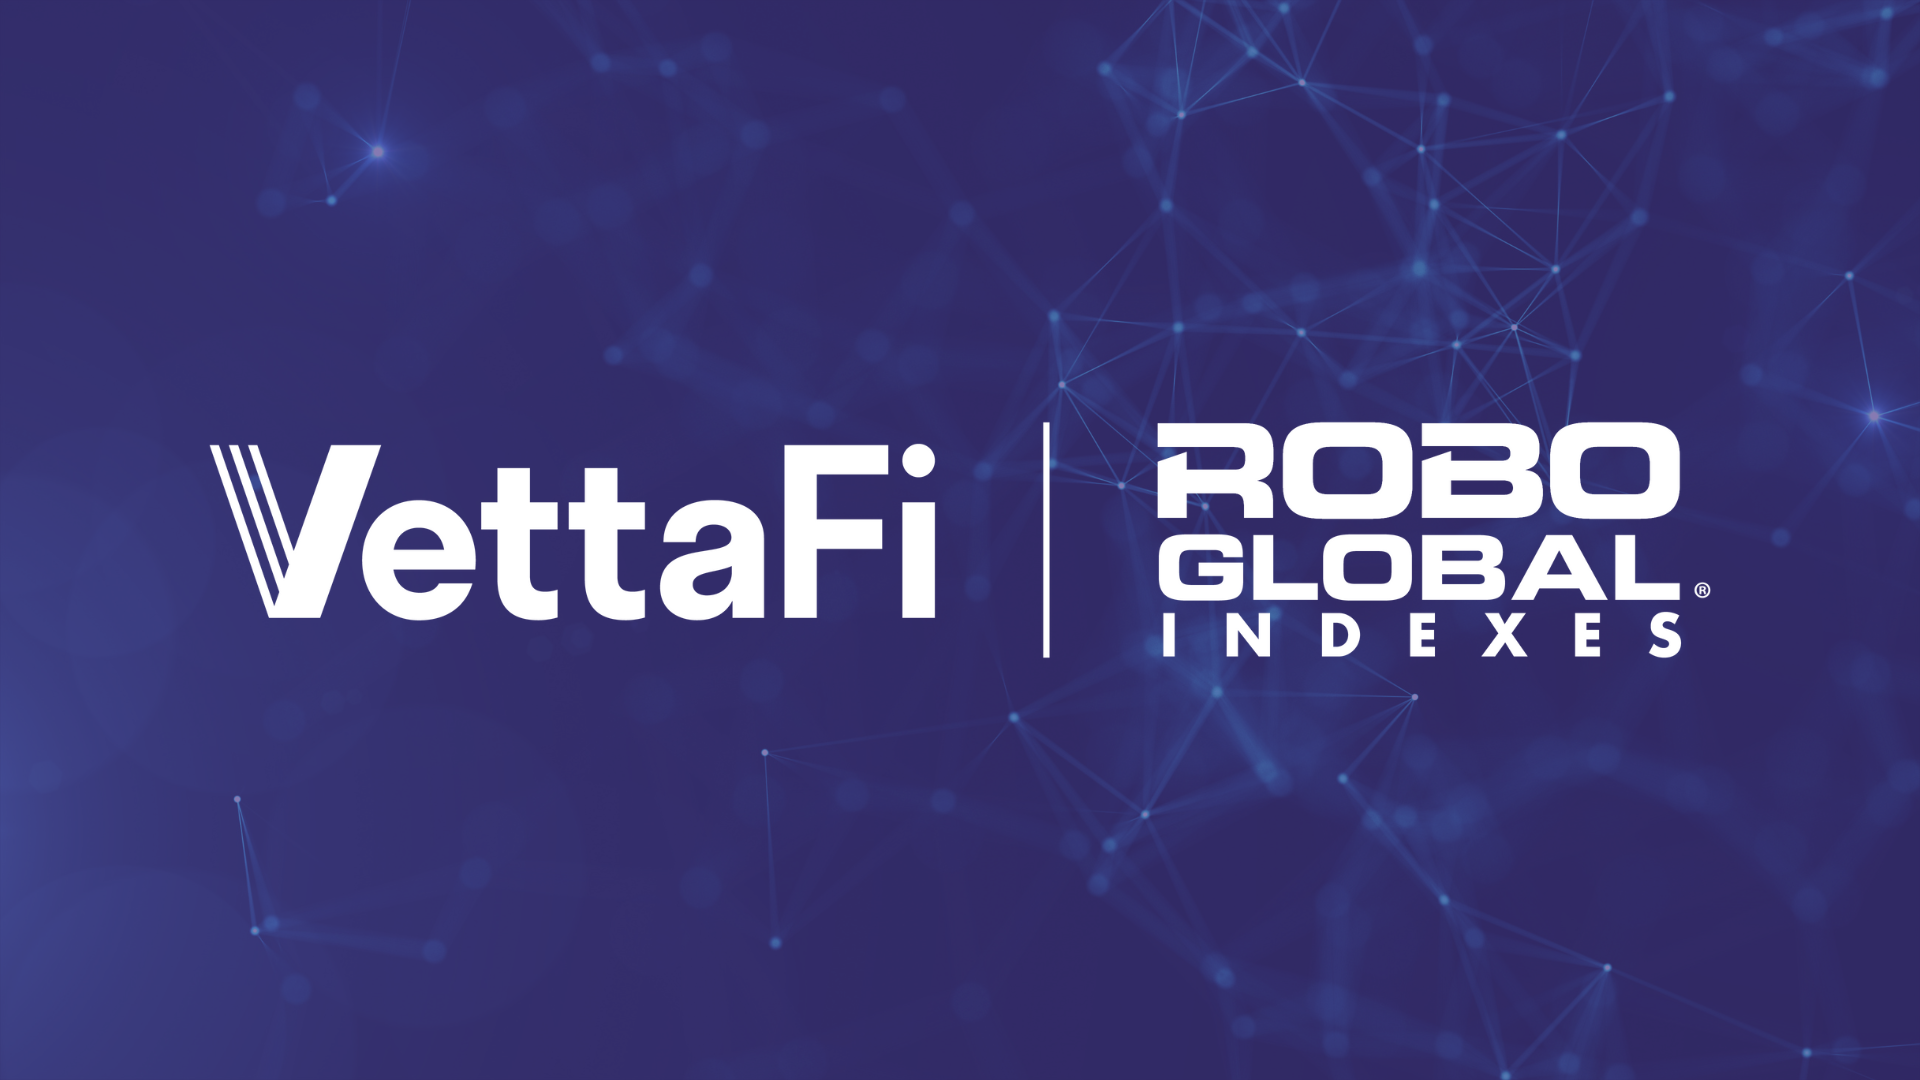 VettaFi Acquires the ROBO Global Index Suite